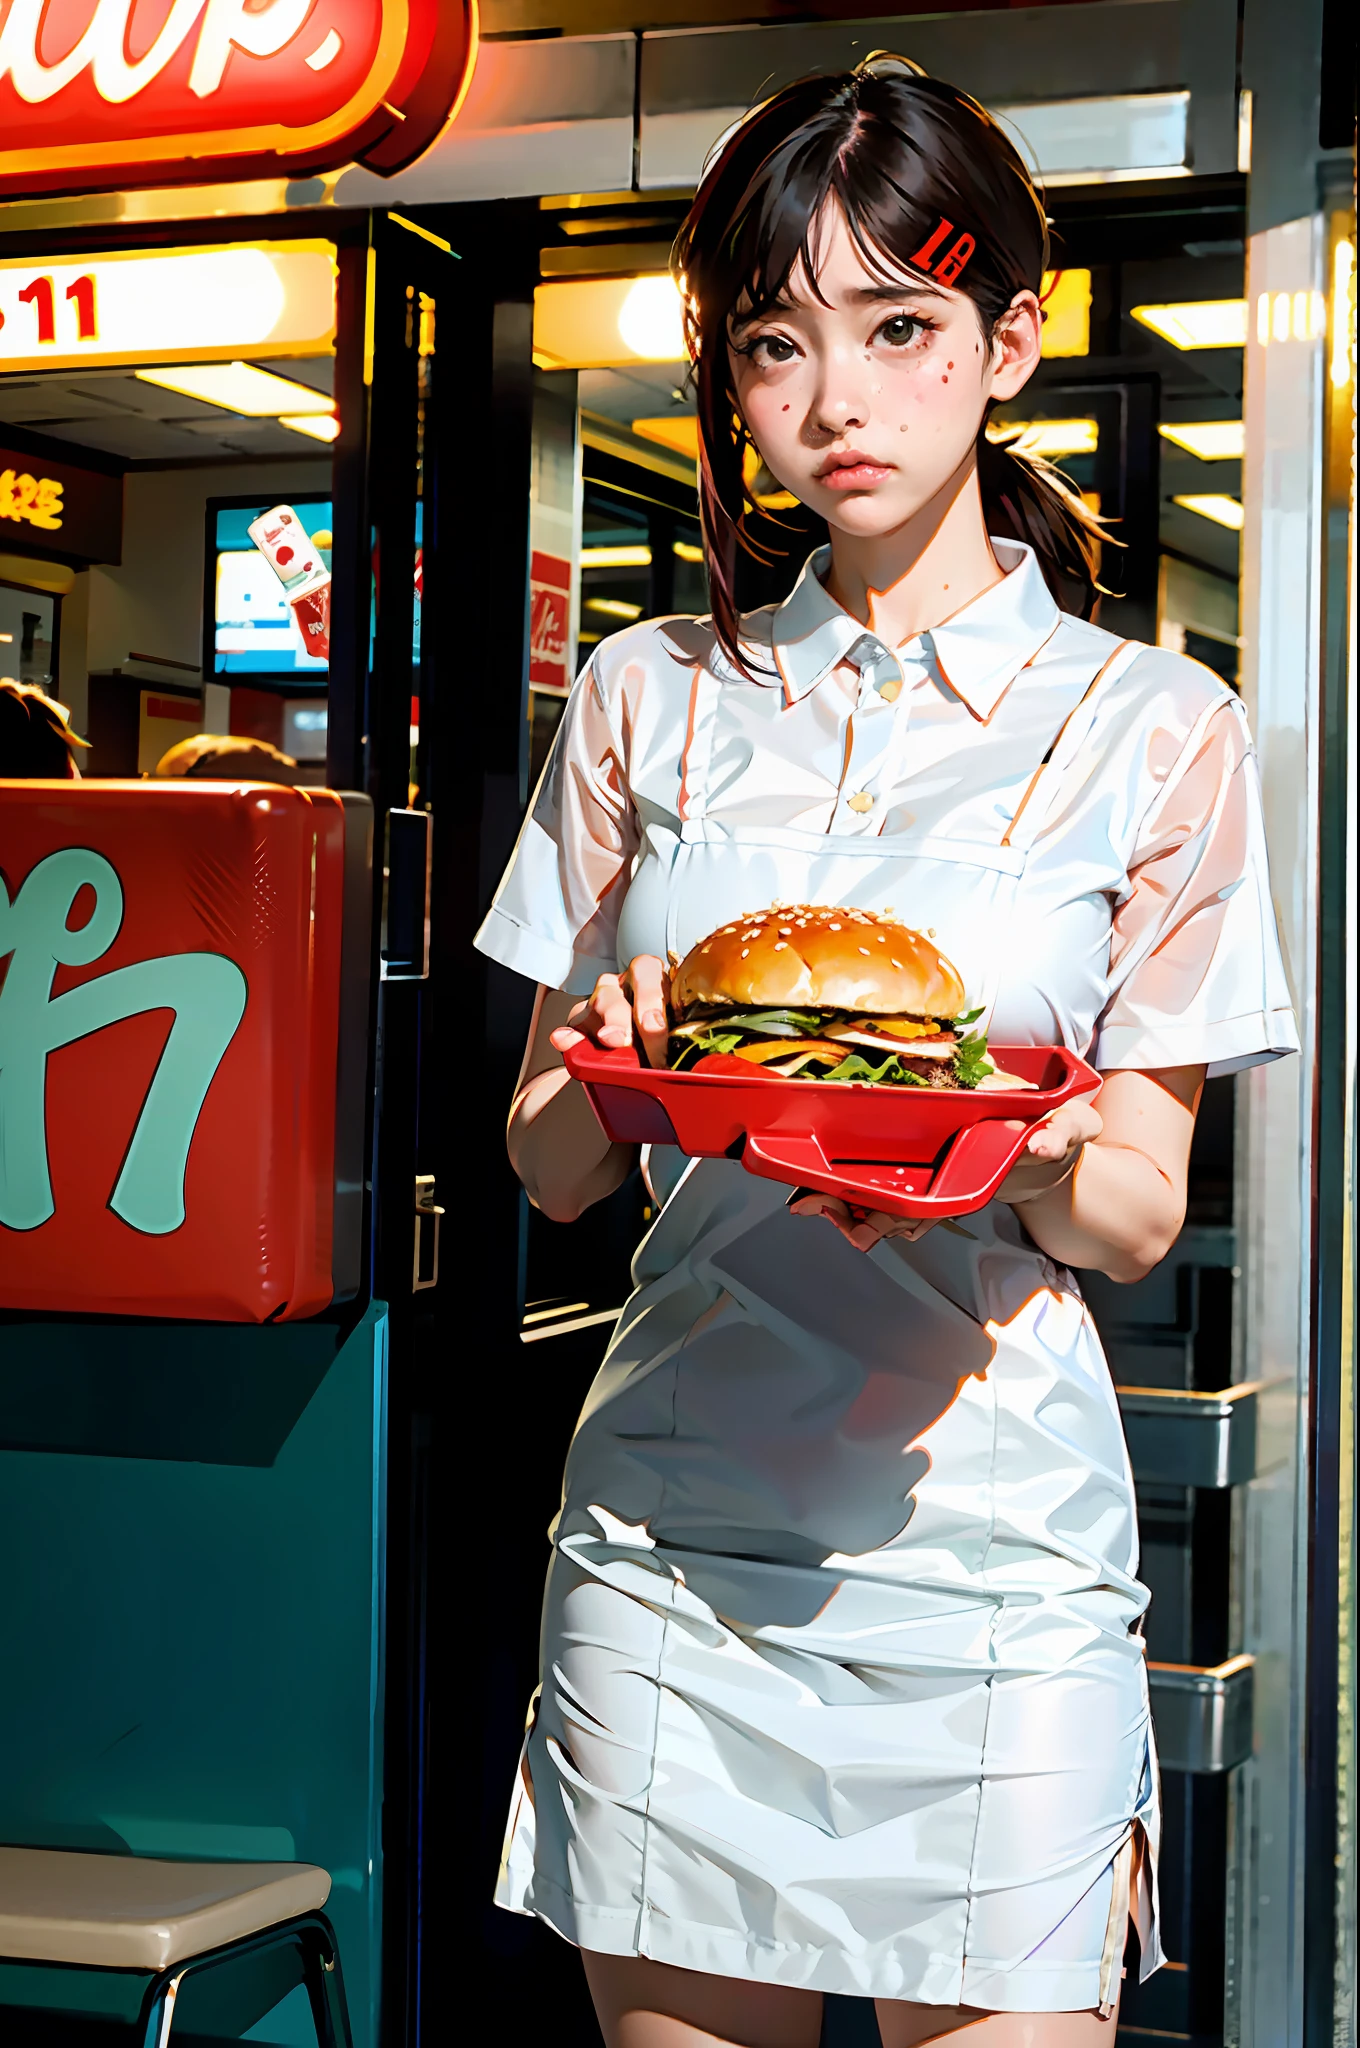 1女孩, 独自的, 大乳房, (景深: 1.1), (实际的, photo-实际的: 1.37), 穿着快餐护理服的女孩,端着汉堡托盘,悲伤的脸, 下方视角